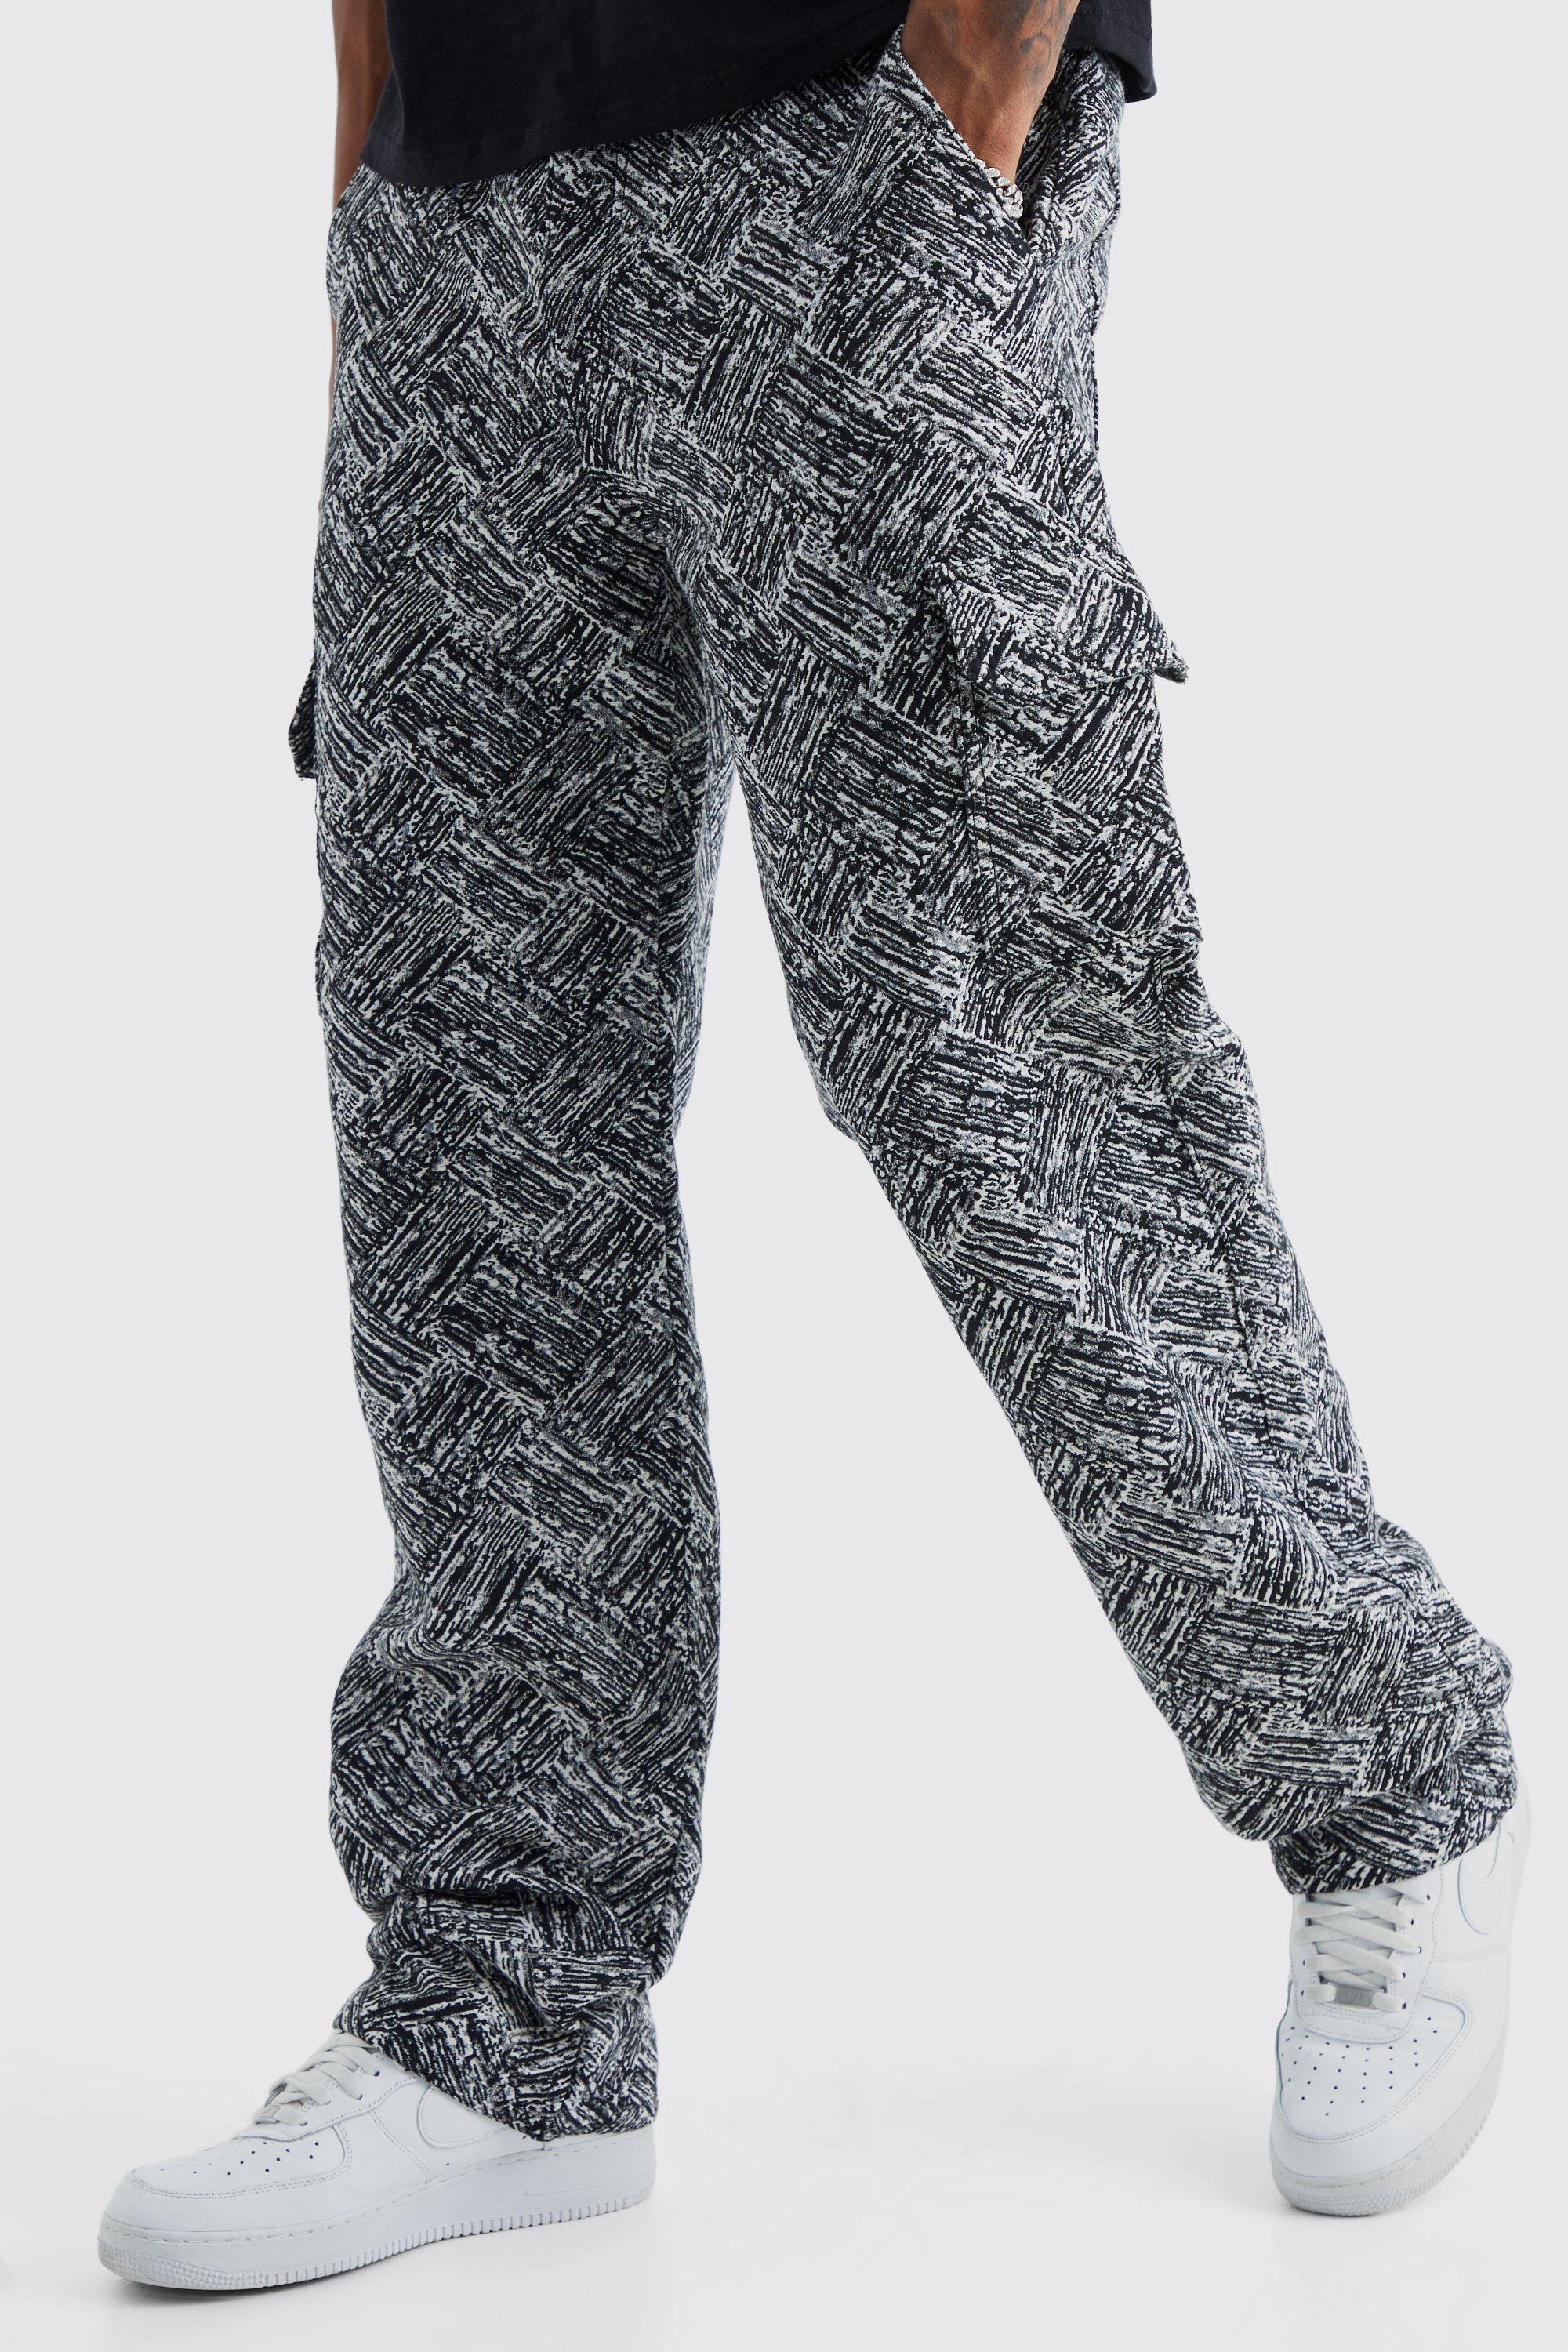 tall - pantalon cargo large à motif tapisserie homme - gris - 34, gris